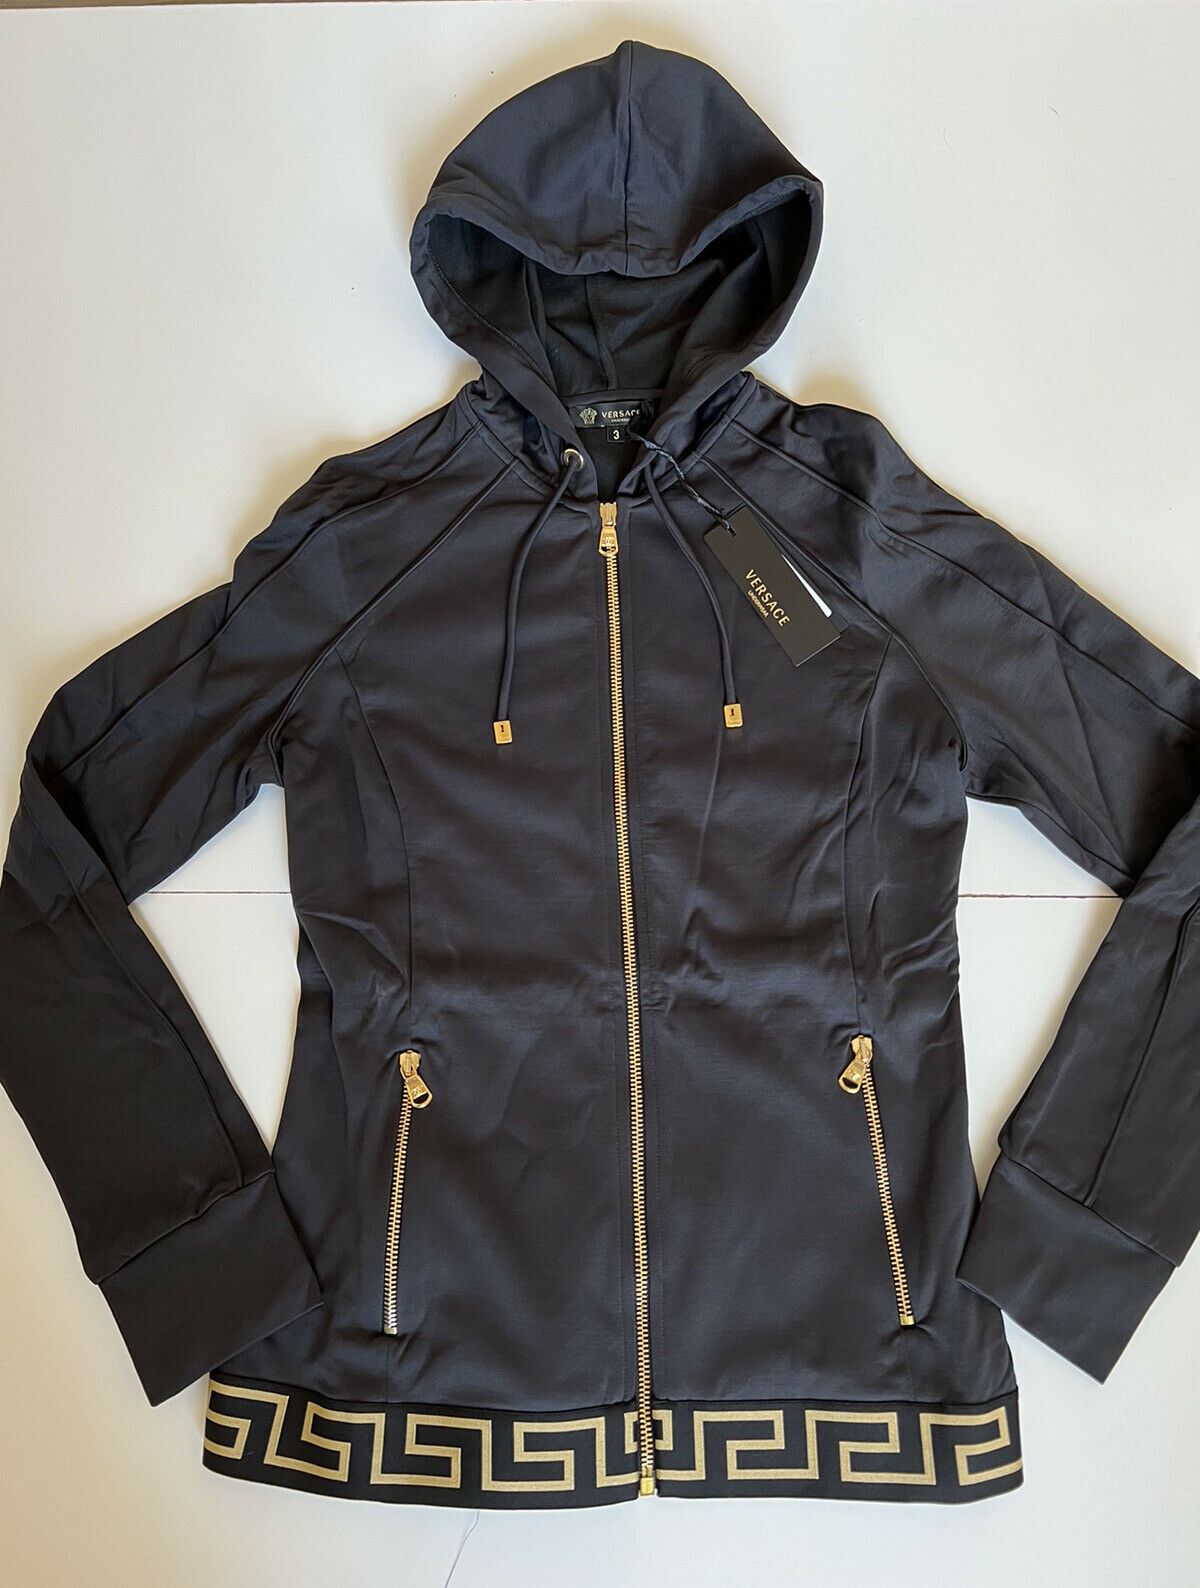 NWT $625 Versace Women's Zip Front Black Sweatshirt Hoodie Jacket 3 (M) Italy